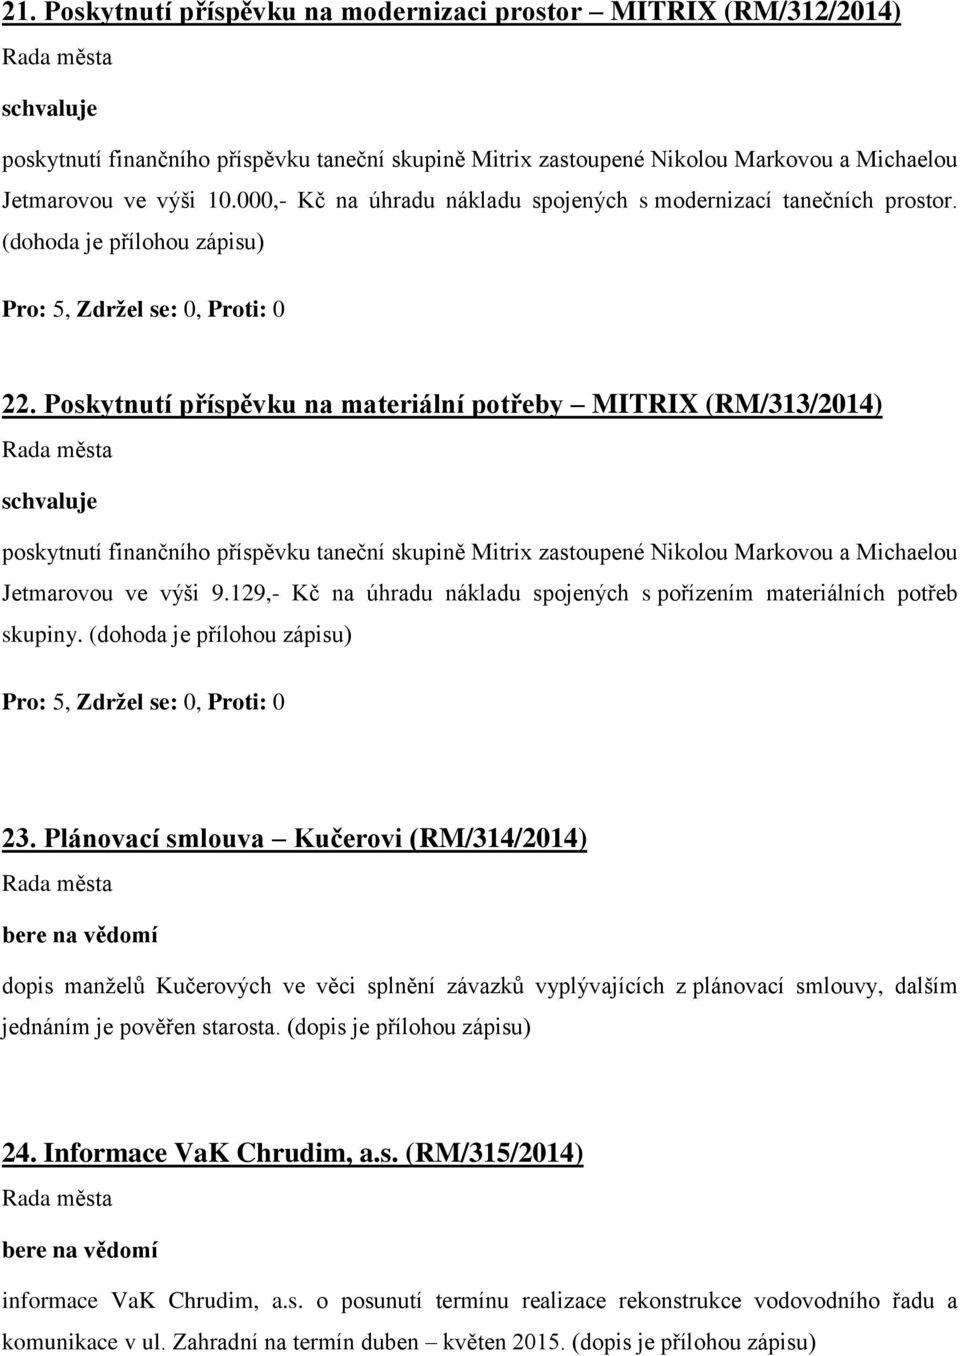 Poskytnutí příspěvku na materiální potřeby MITRIX (RM/313/2014) poskytnutí finančního příspěvku taneční skupině Mitrix zastoupené Nikolou Markovou a Michaelou Jetmarovou ve výši 9.